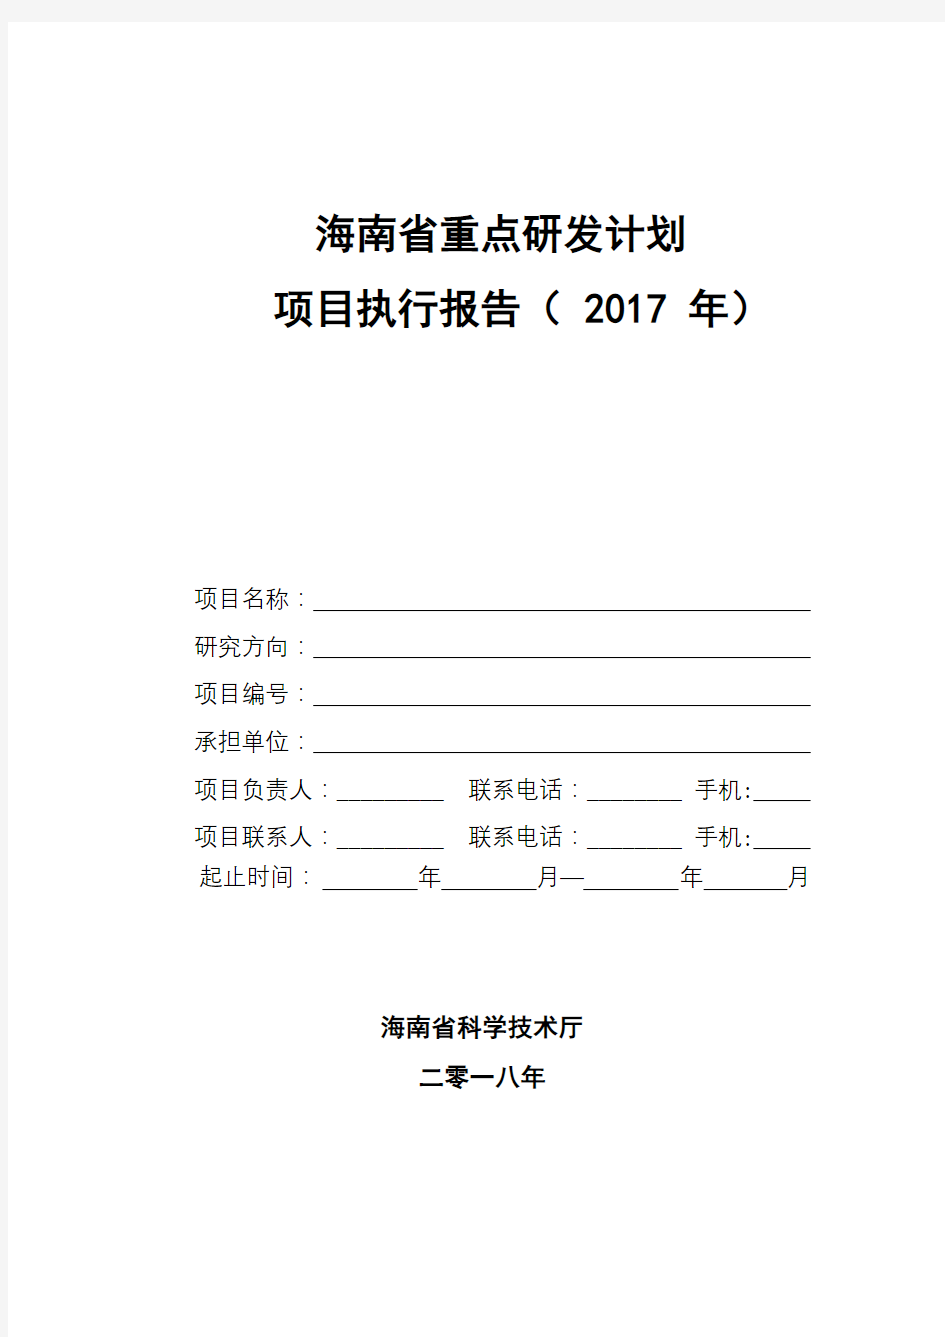 海南省重点研发计划项目执行报告(2017年)【模板】